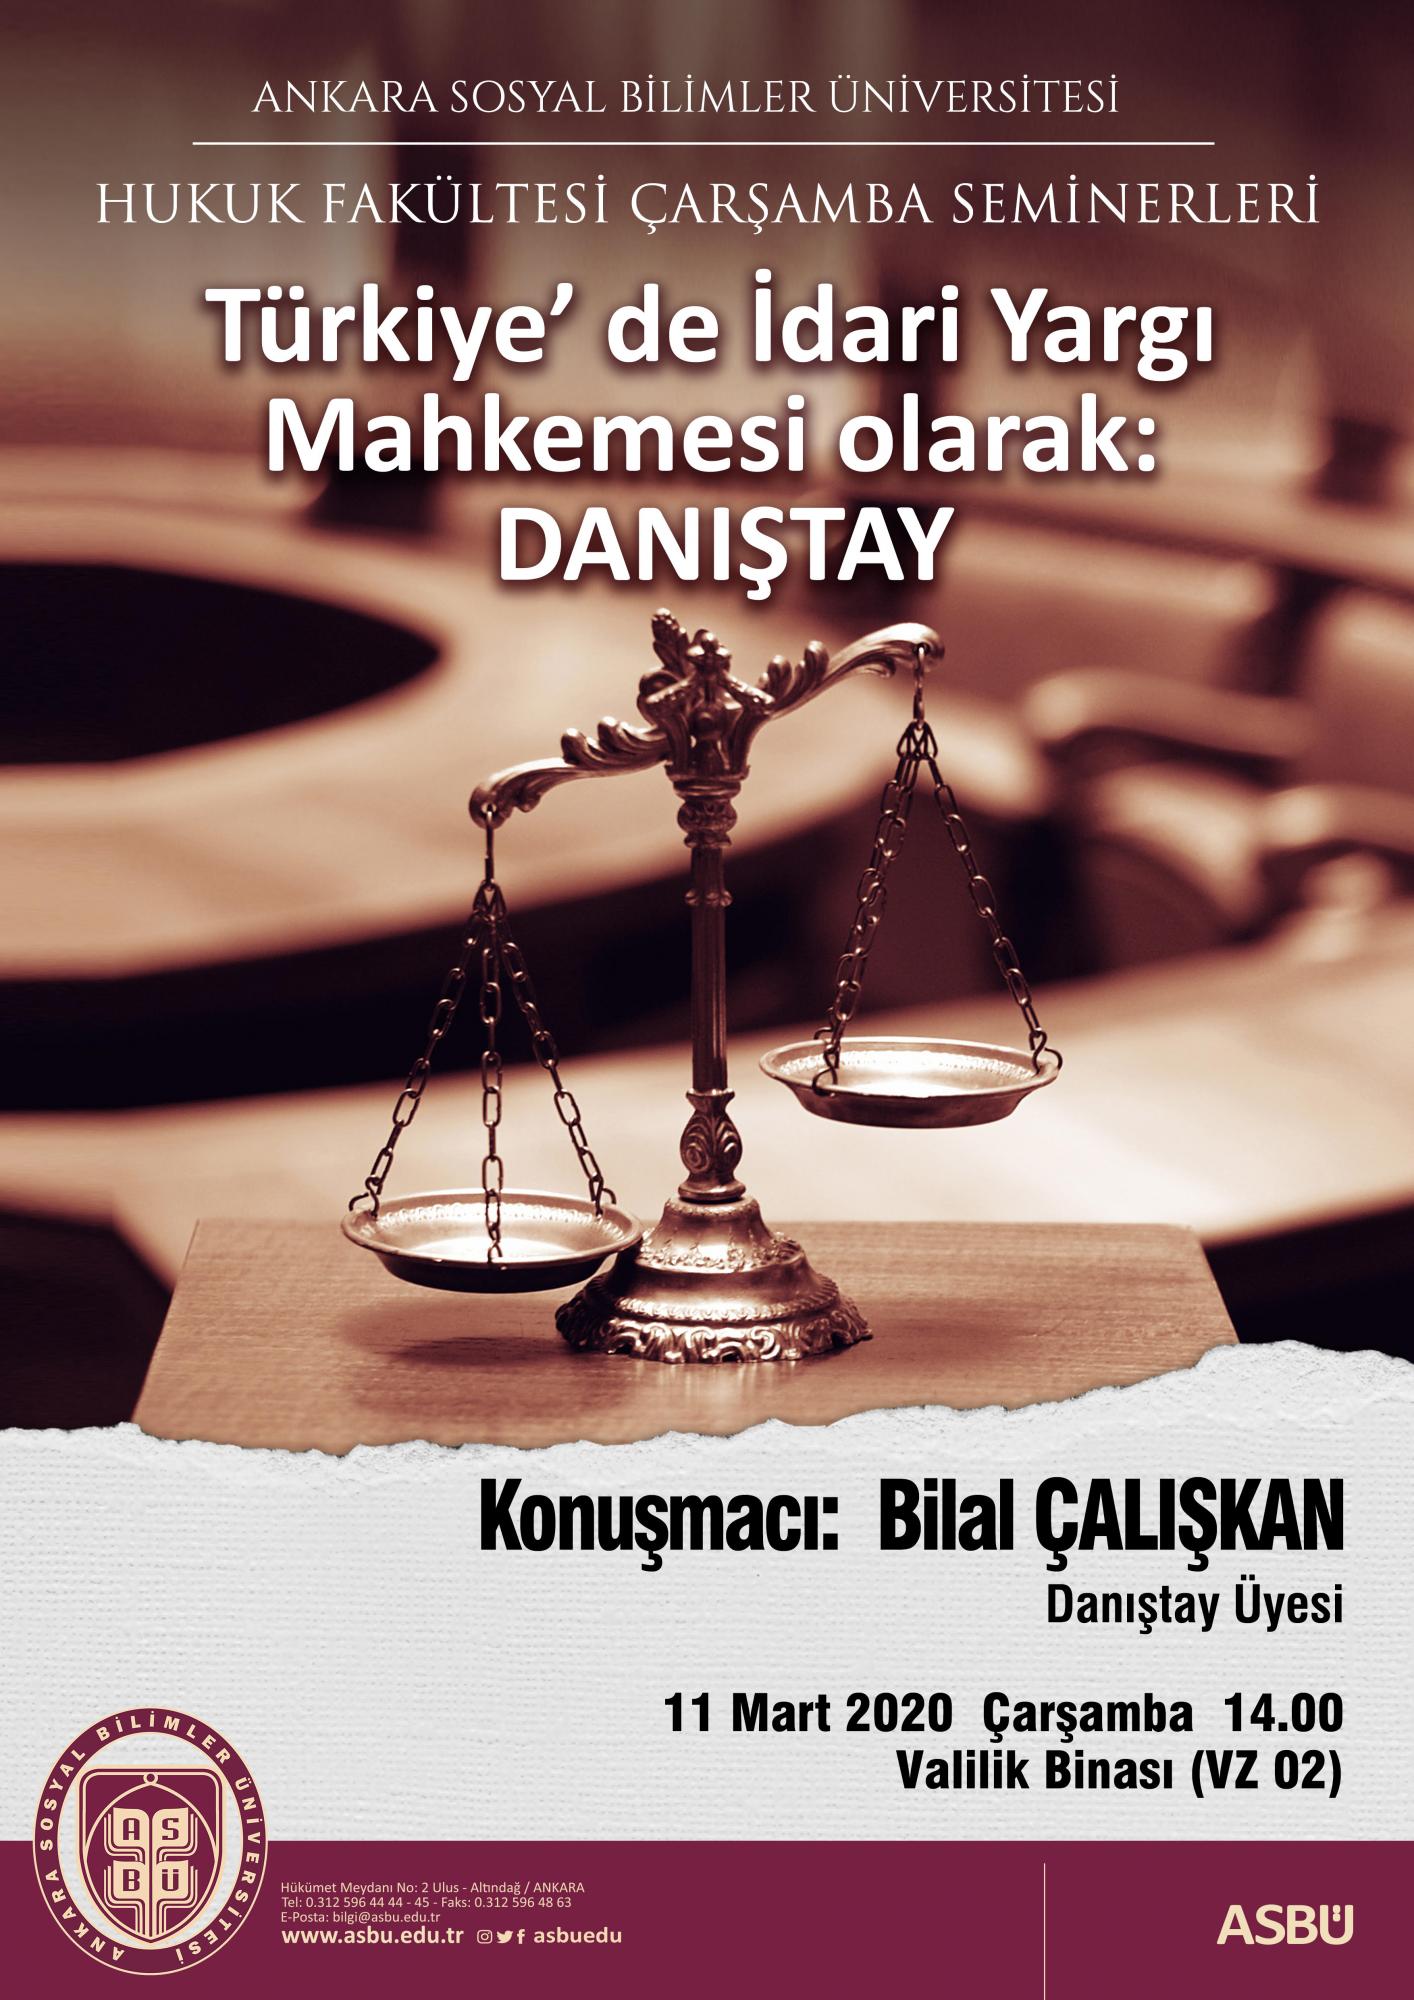 Türkiye’de İdari Yargı Mahkemesi olarak Danıştay